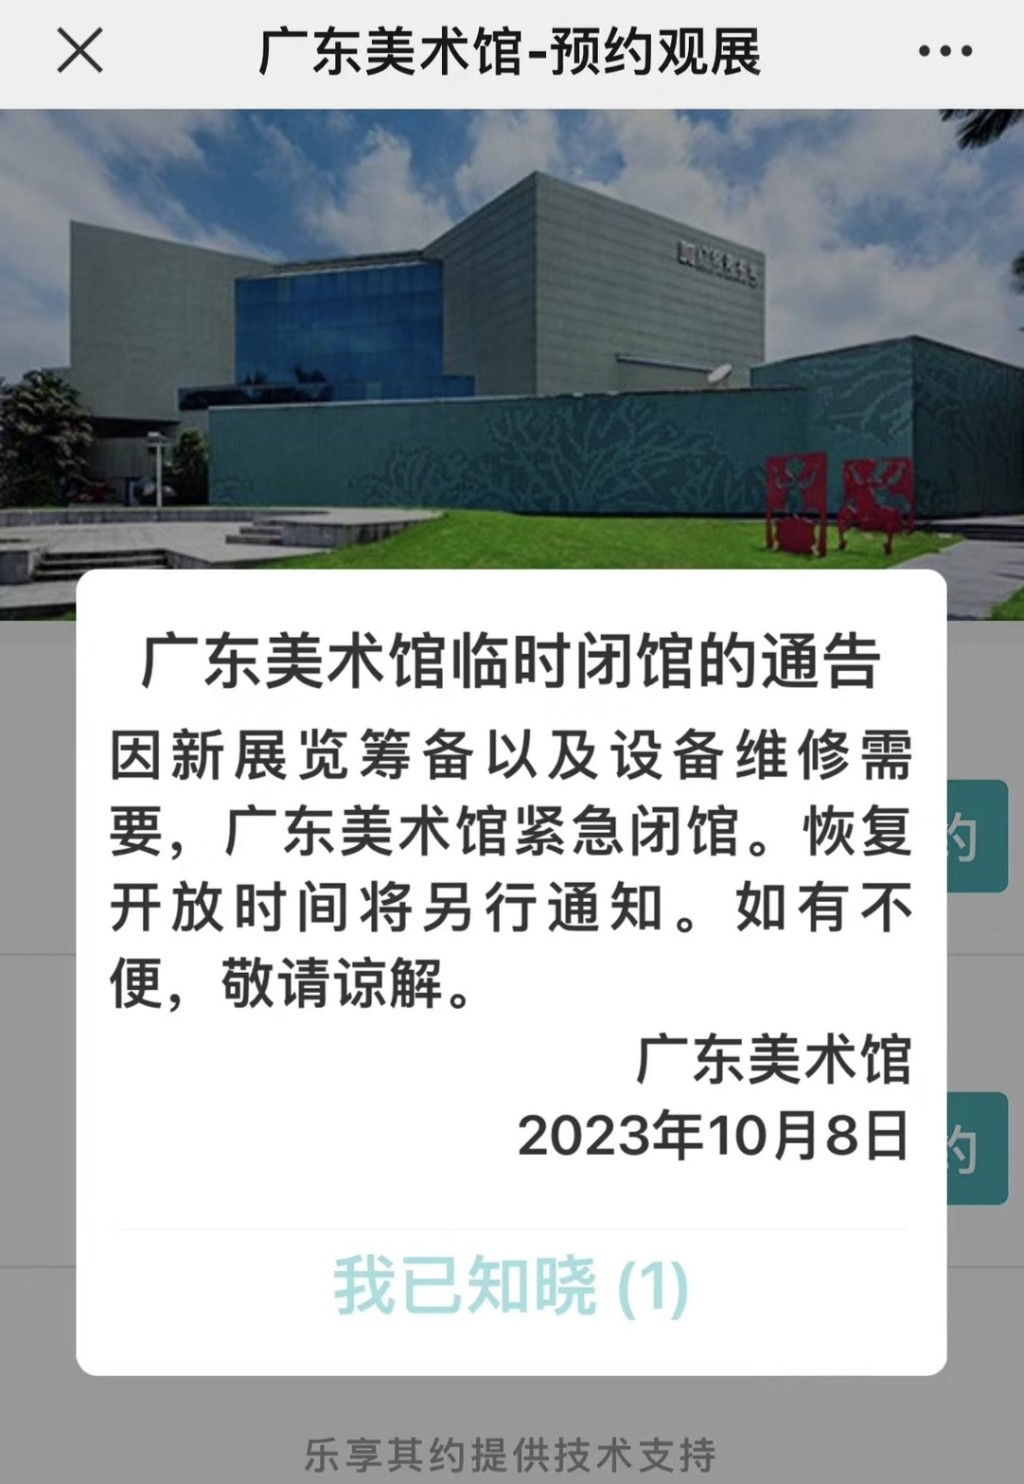 当天事发后广东美术馆宣布紧急闭馆。